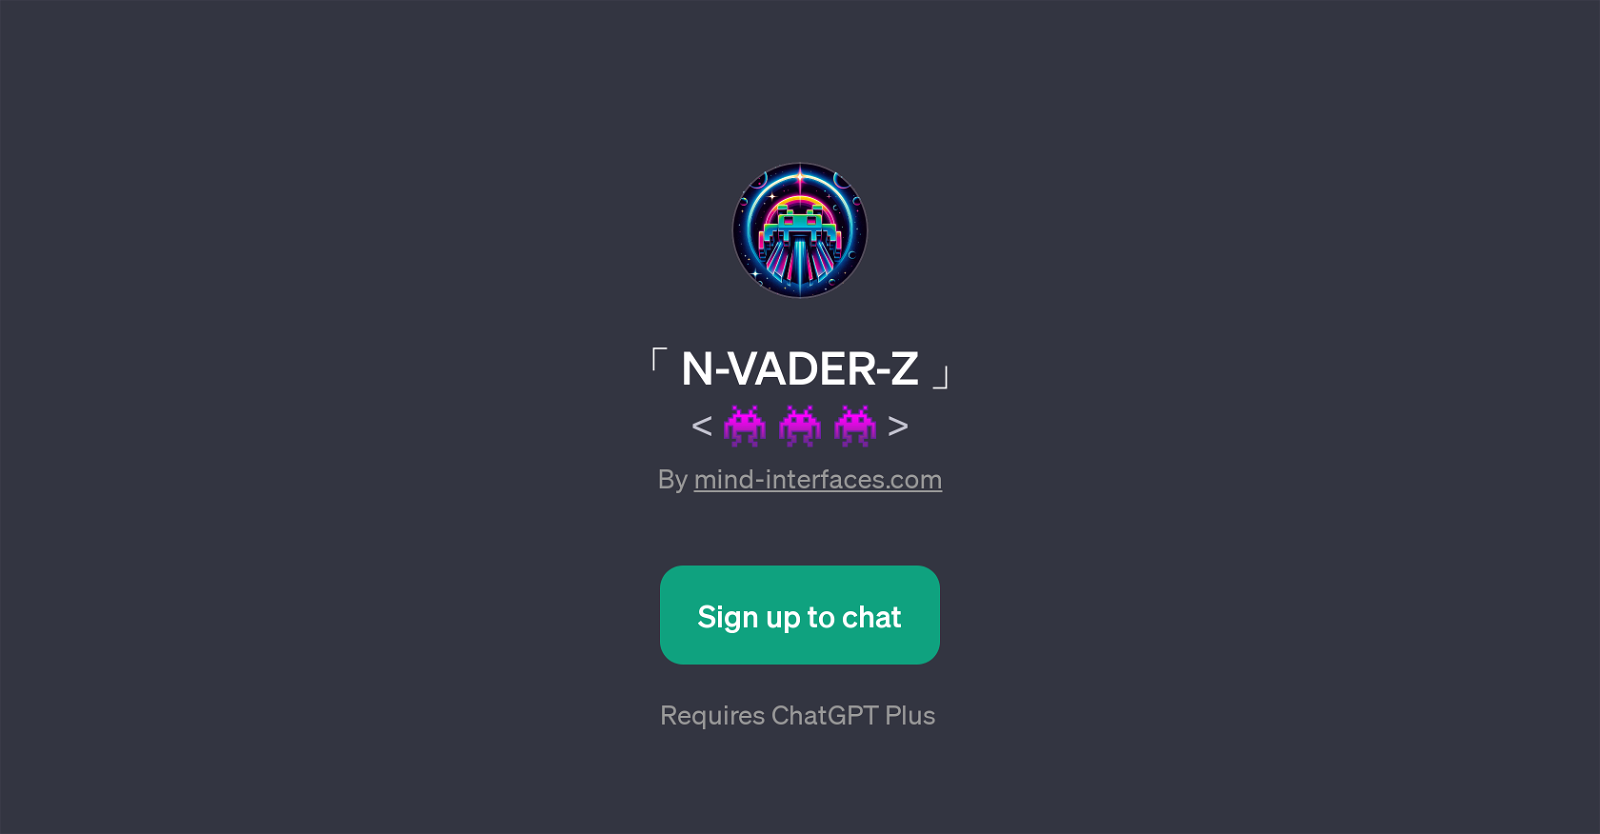 N-VADER-Z website